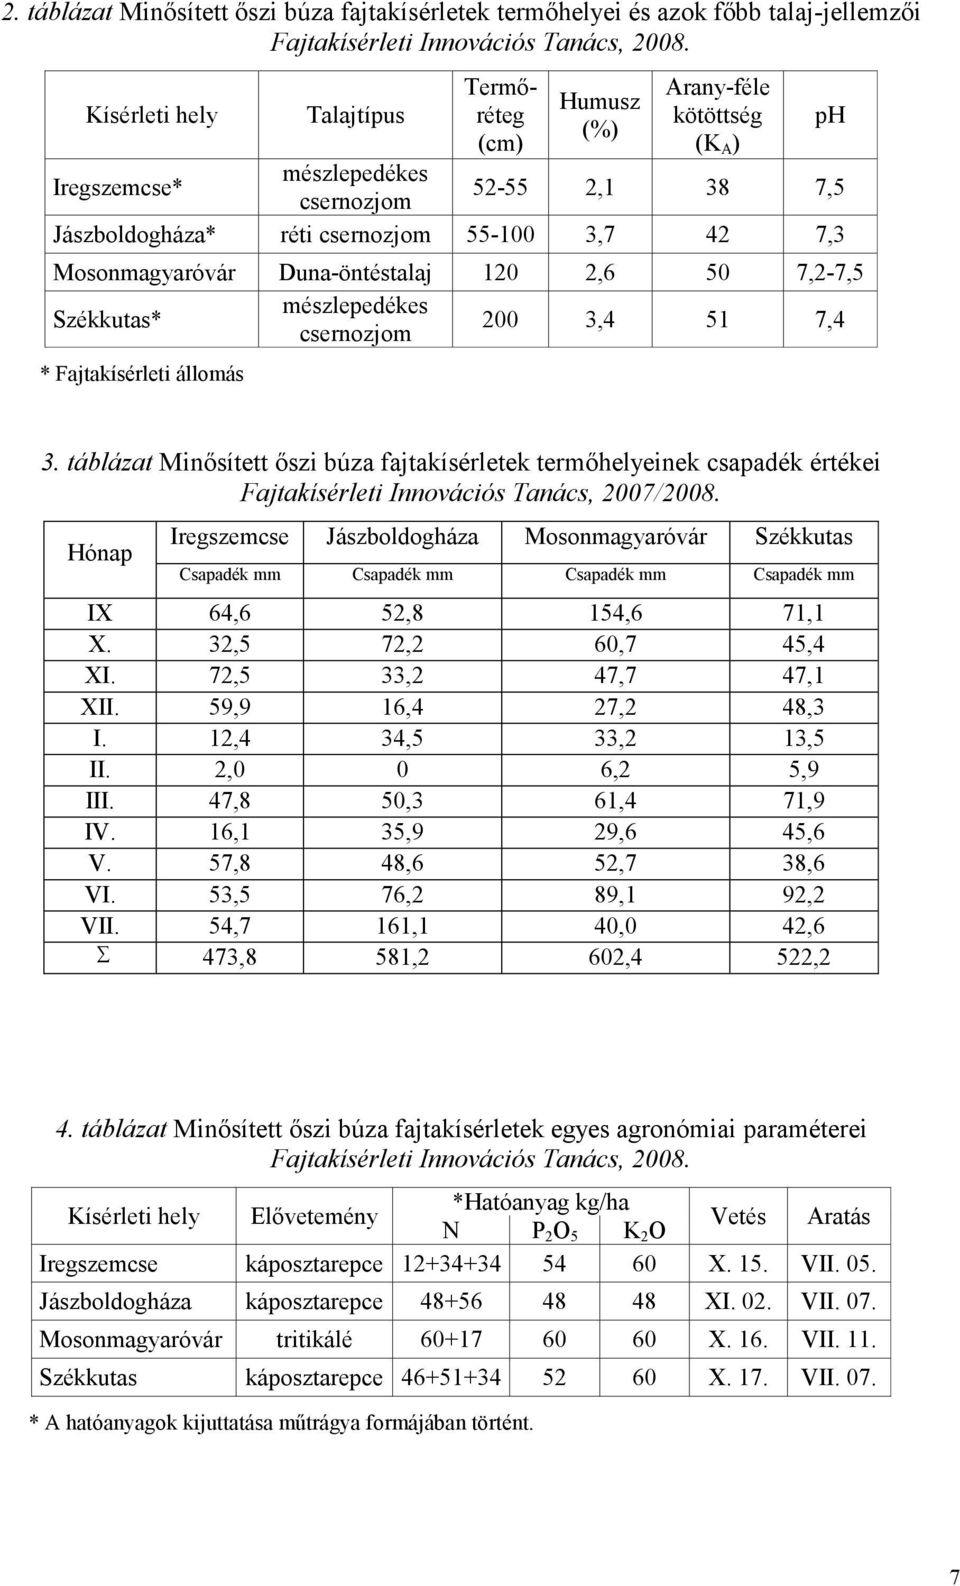 állomás ph 3. táblázat Minısített ıszi búza fajtakísérletek termıhelyeinek csapadék értékei Fajtakísérleti Innovációs Tanács, 2007/2008.